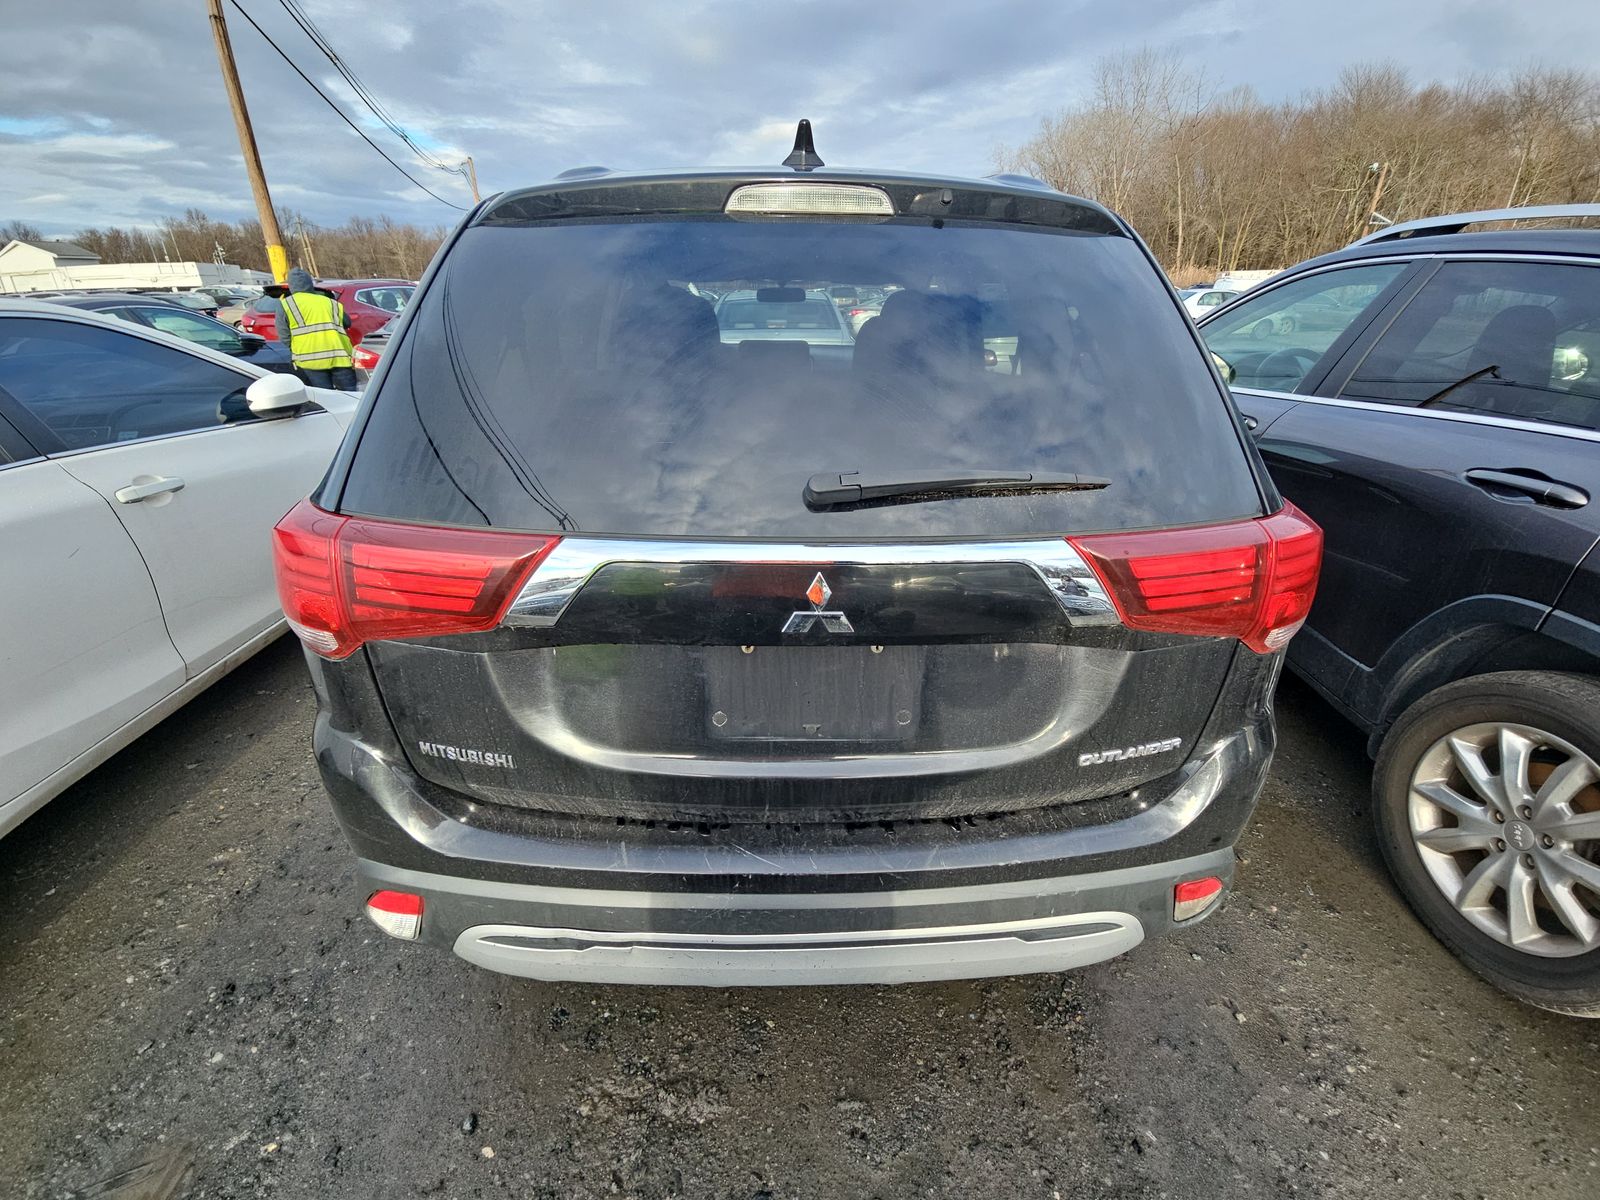 2019 Mitsubishi Outlander ES FWD